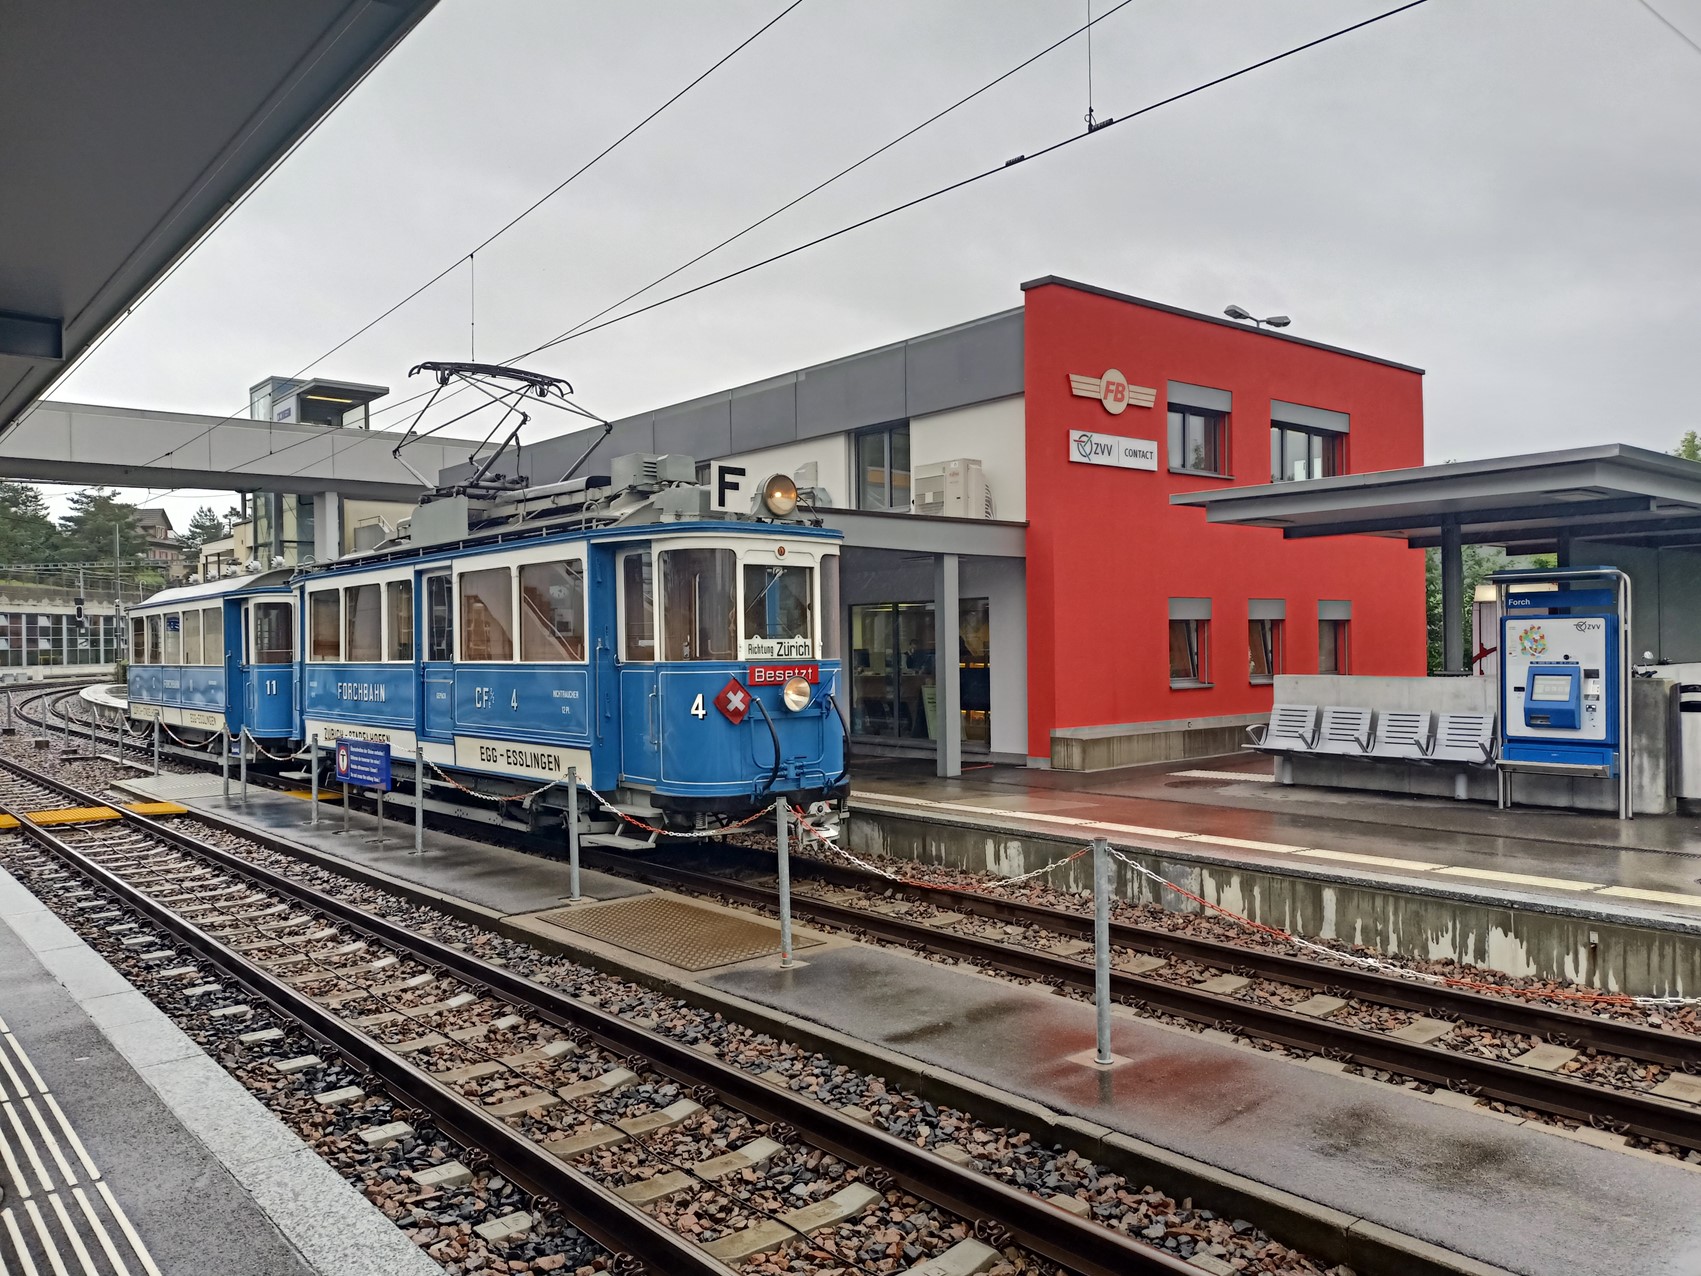 Der historische Forchbahnzug aus der Gründerzeit steht vor dem Bahnhof Forch.